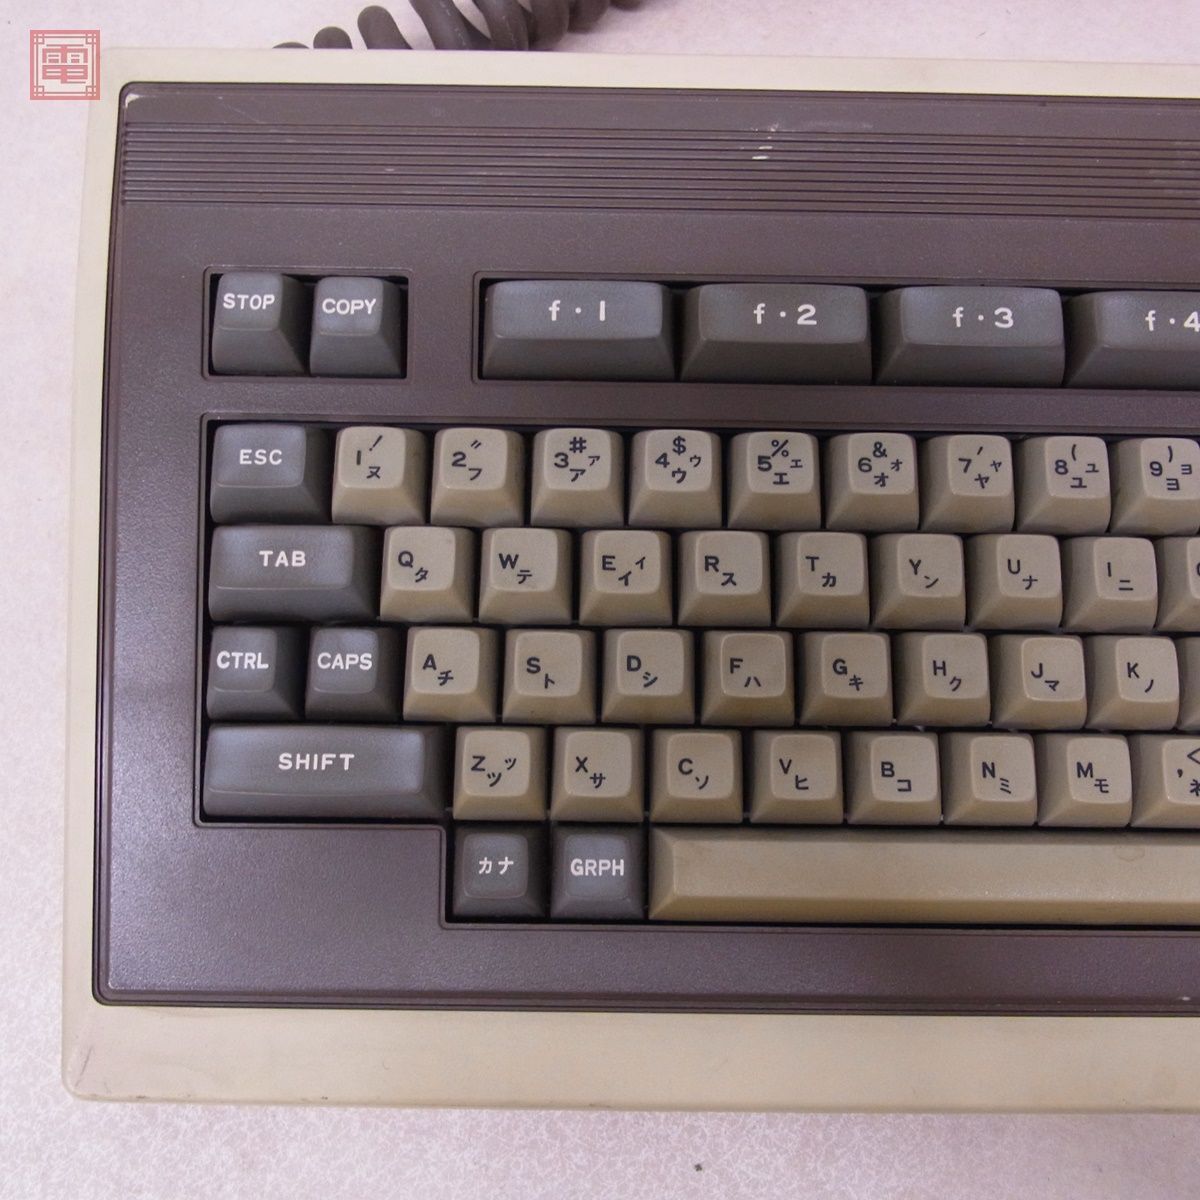 NEC PC-8801 клавиатура Япония электрический работоспособность не проверялась [20